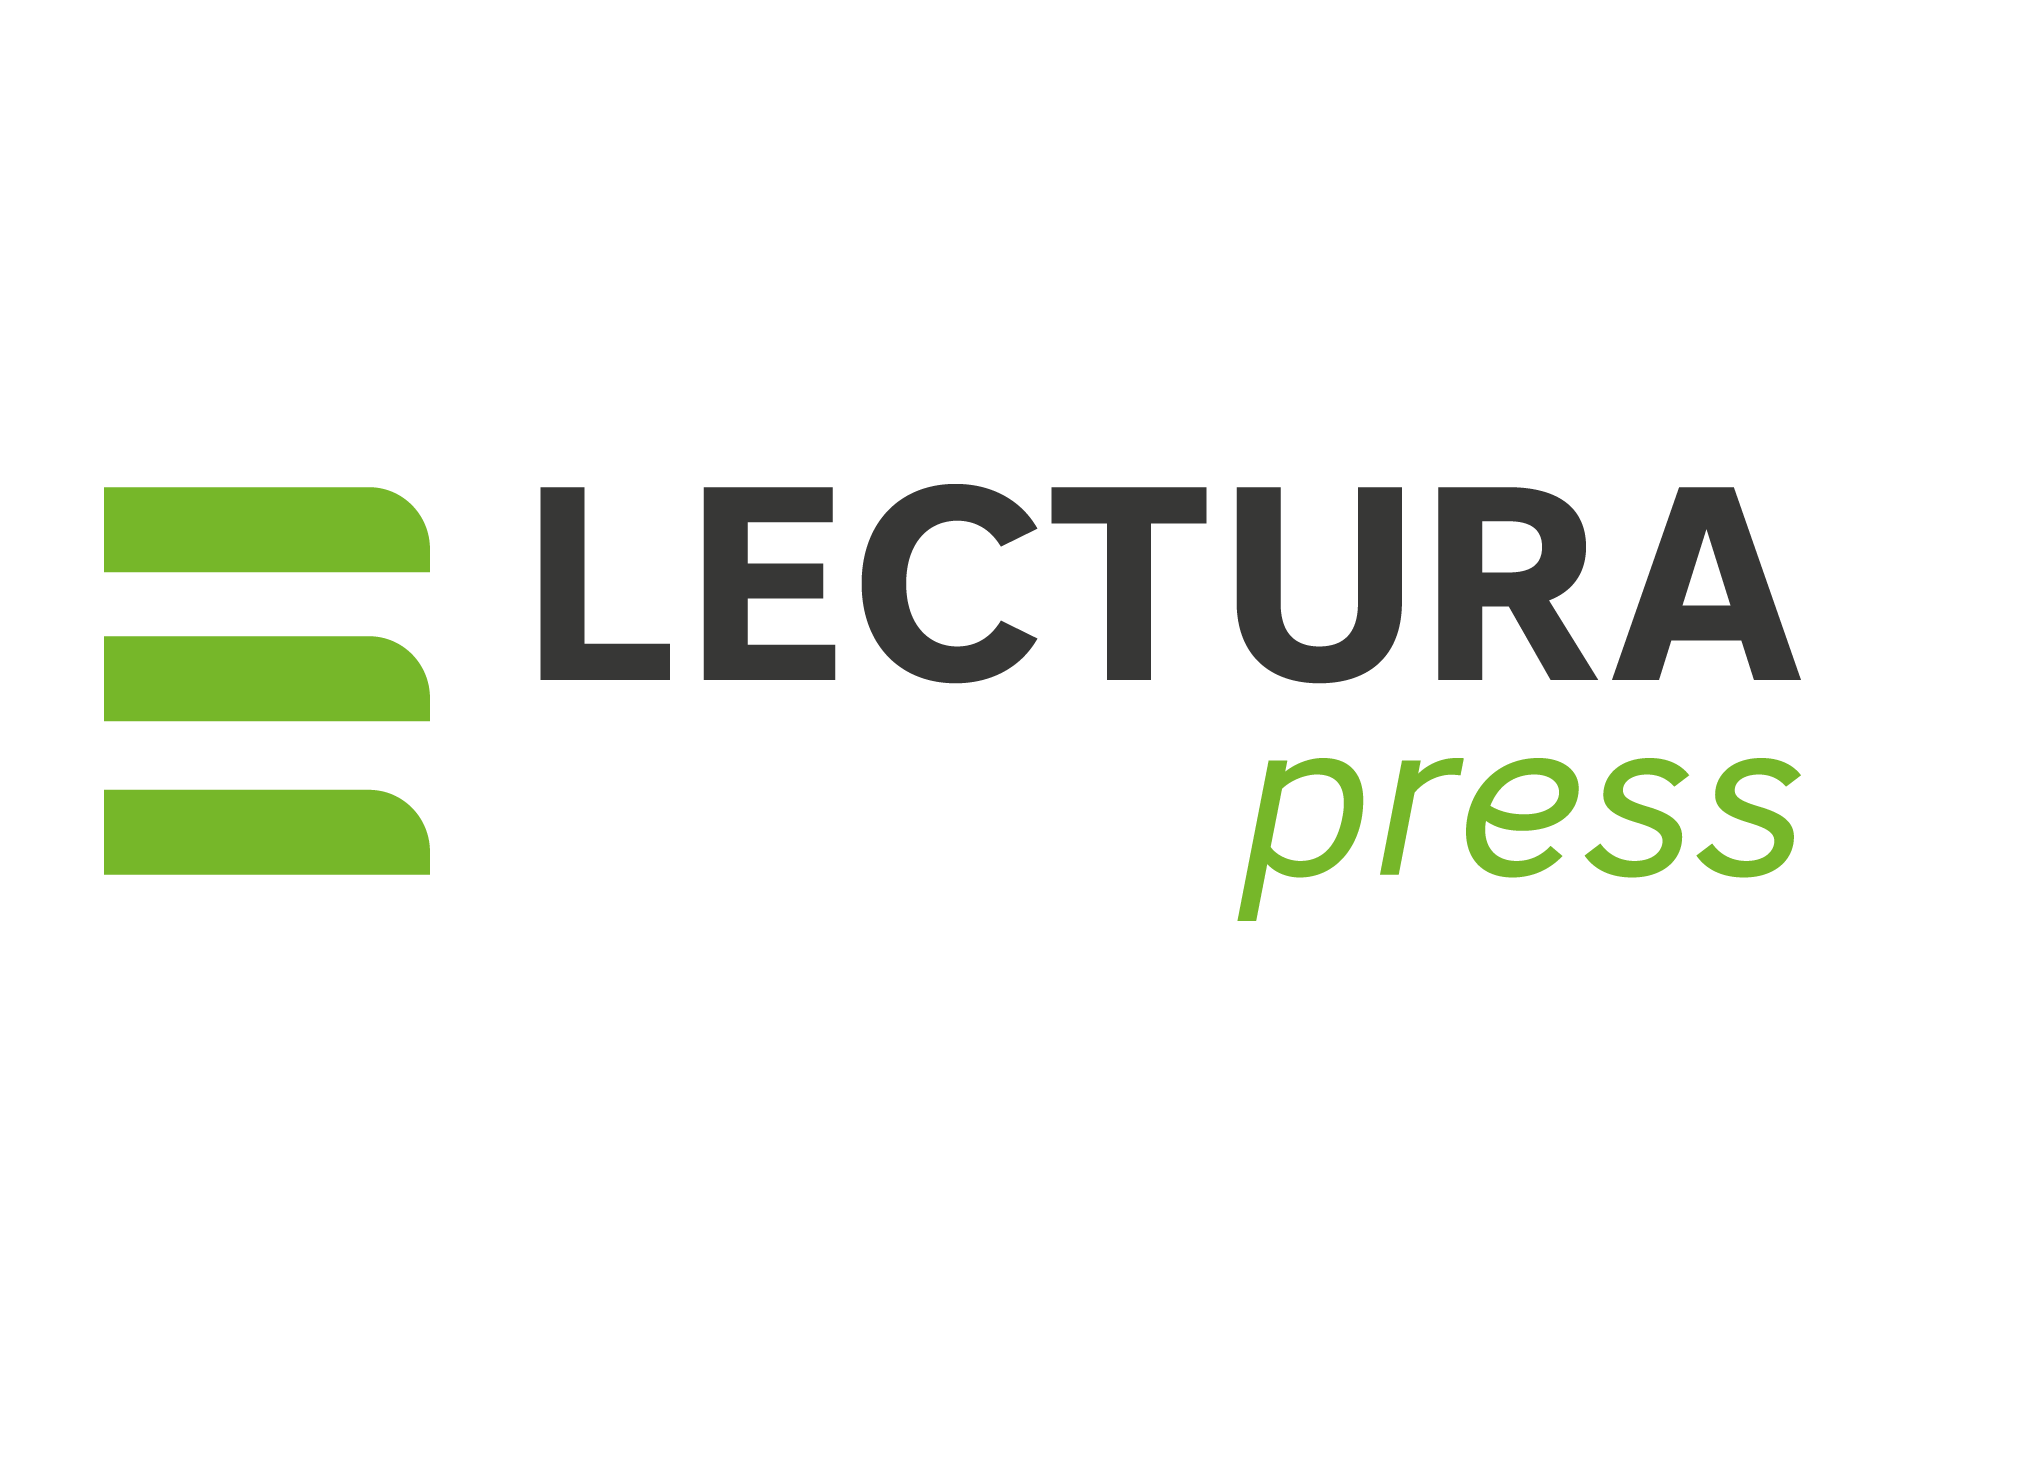 LECTURA Press logo